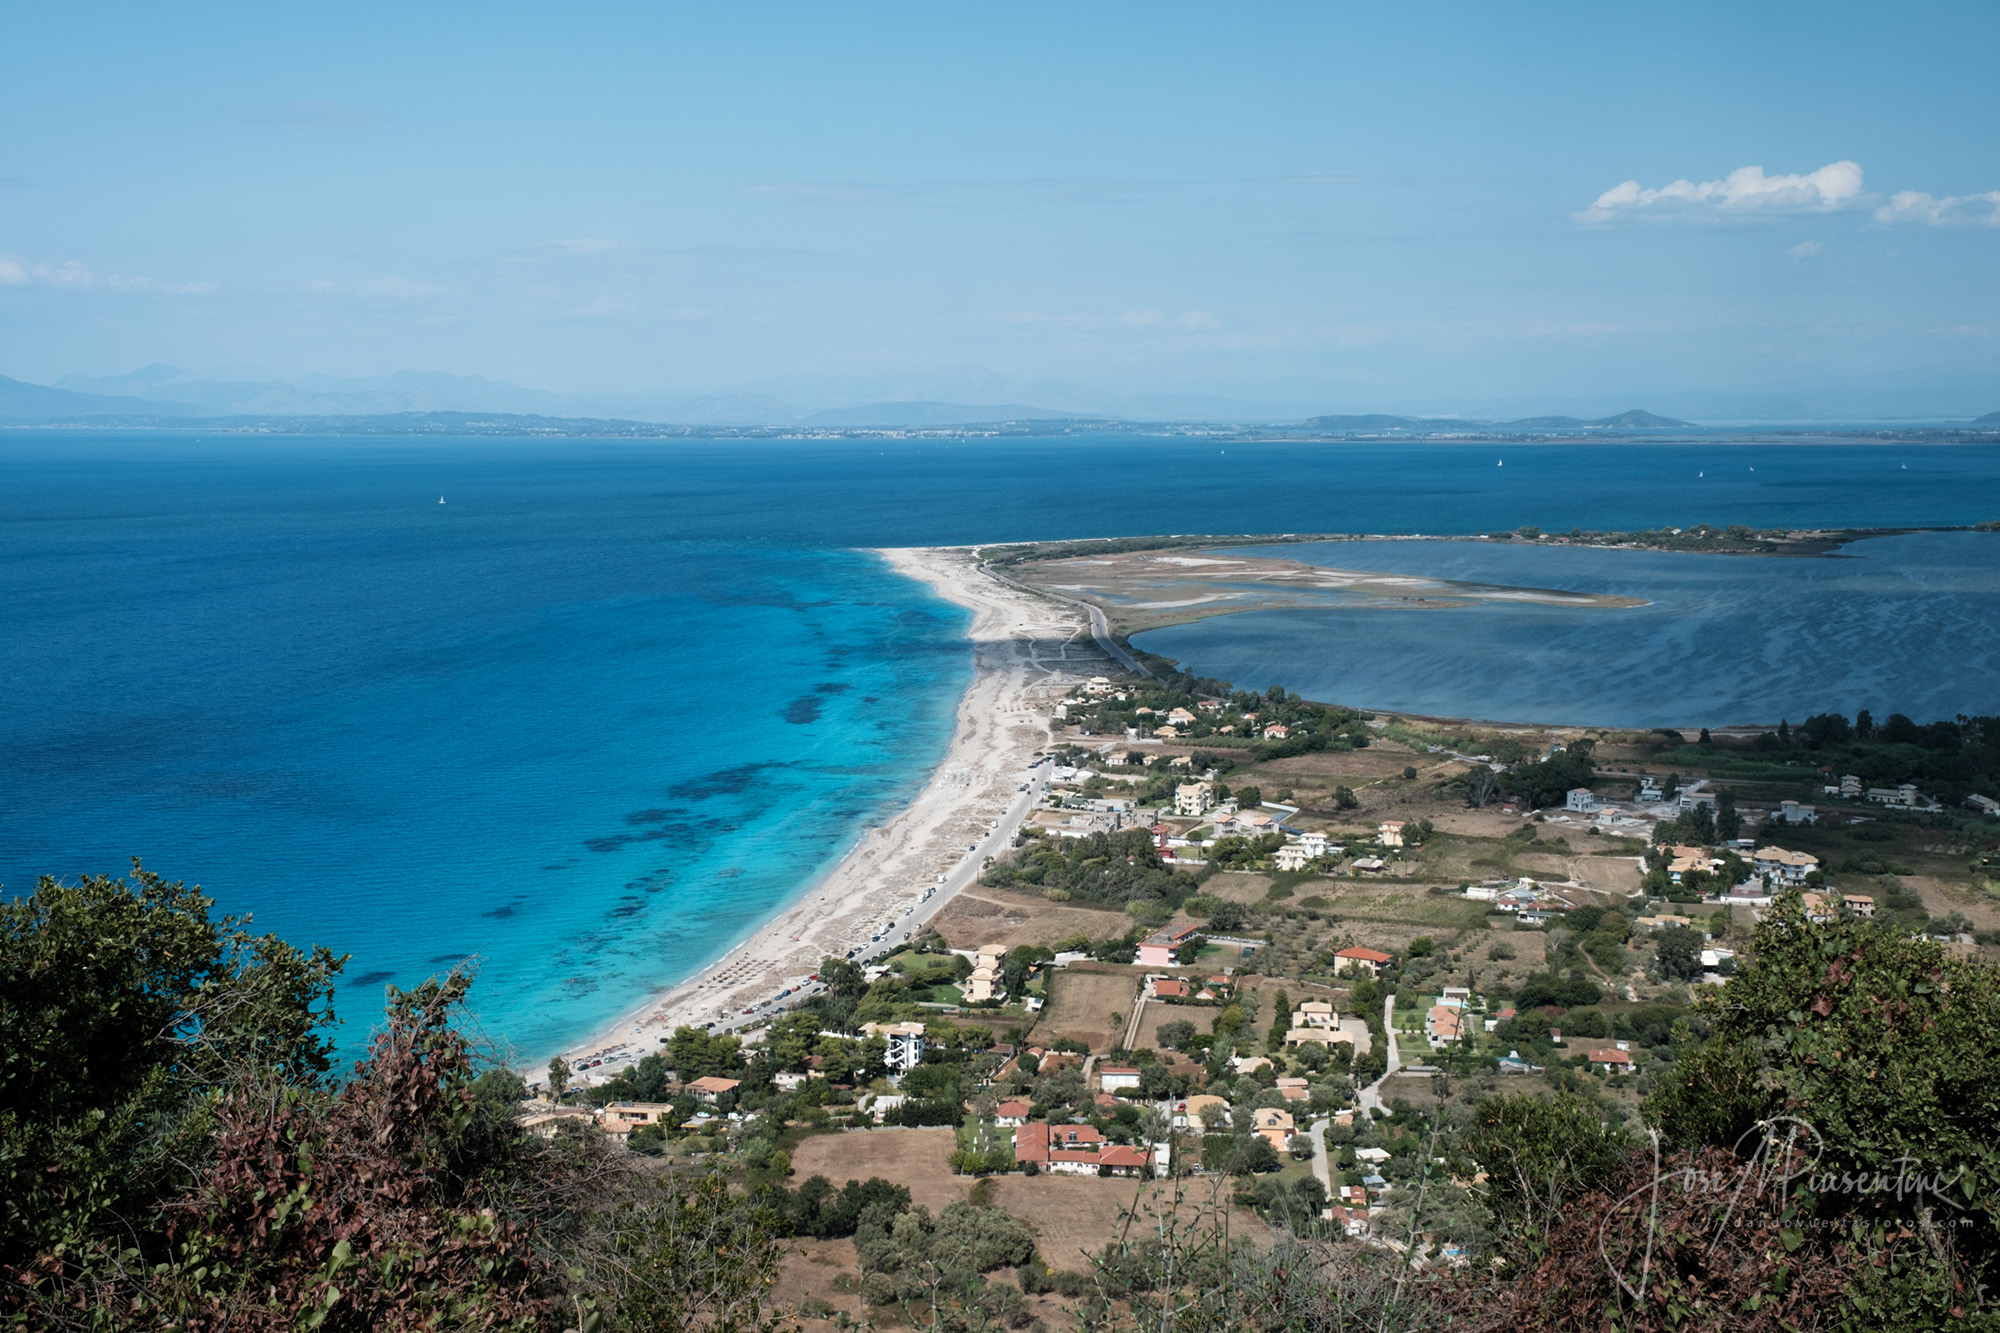 Grecia en furgoneta - La isla de Lefkada